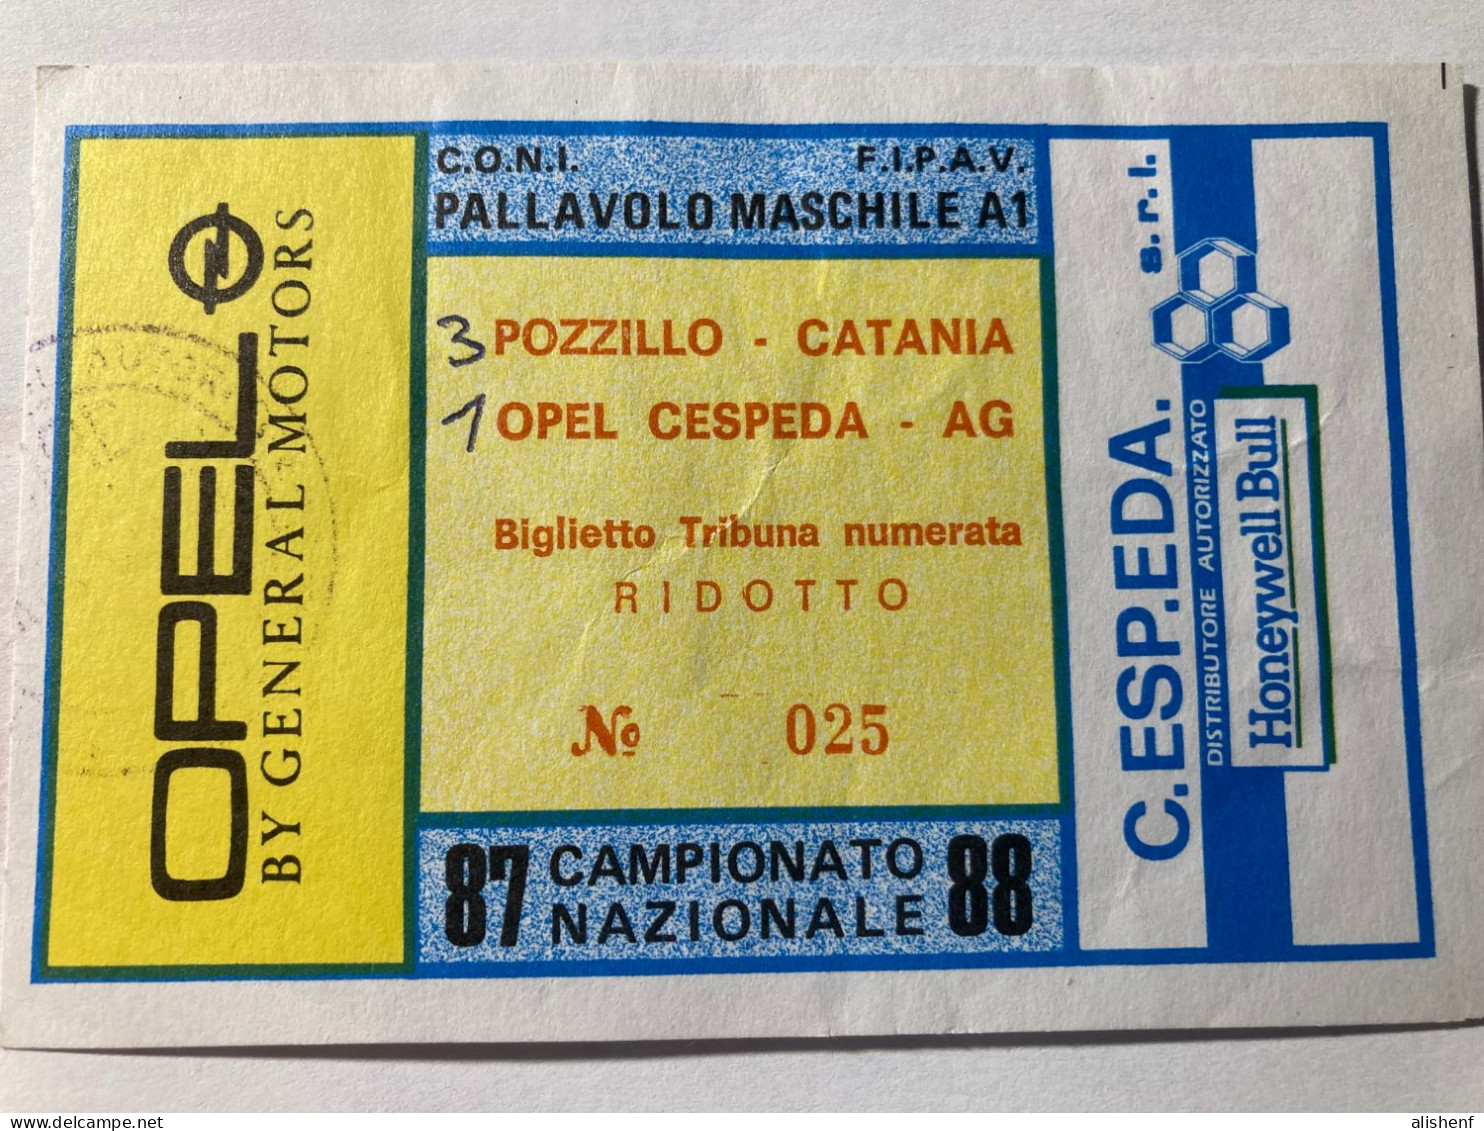 Biglietto Pallavolo Mascile Serie A1 Opel Cespeda Agrigento Pozzillo Catania Campionato 1987-88 - Tickets - Vouchers